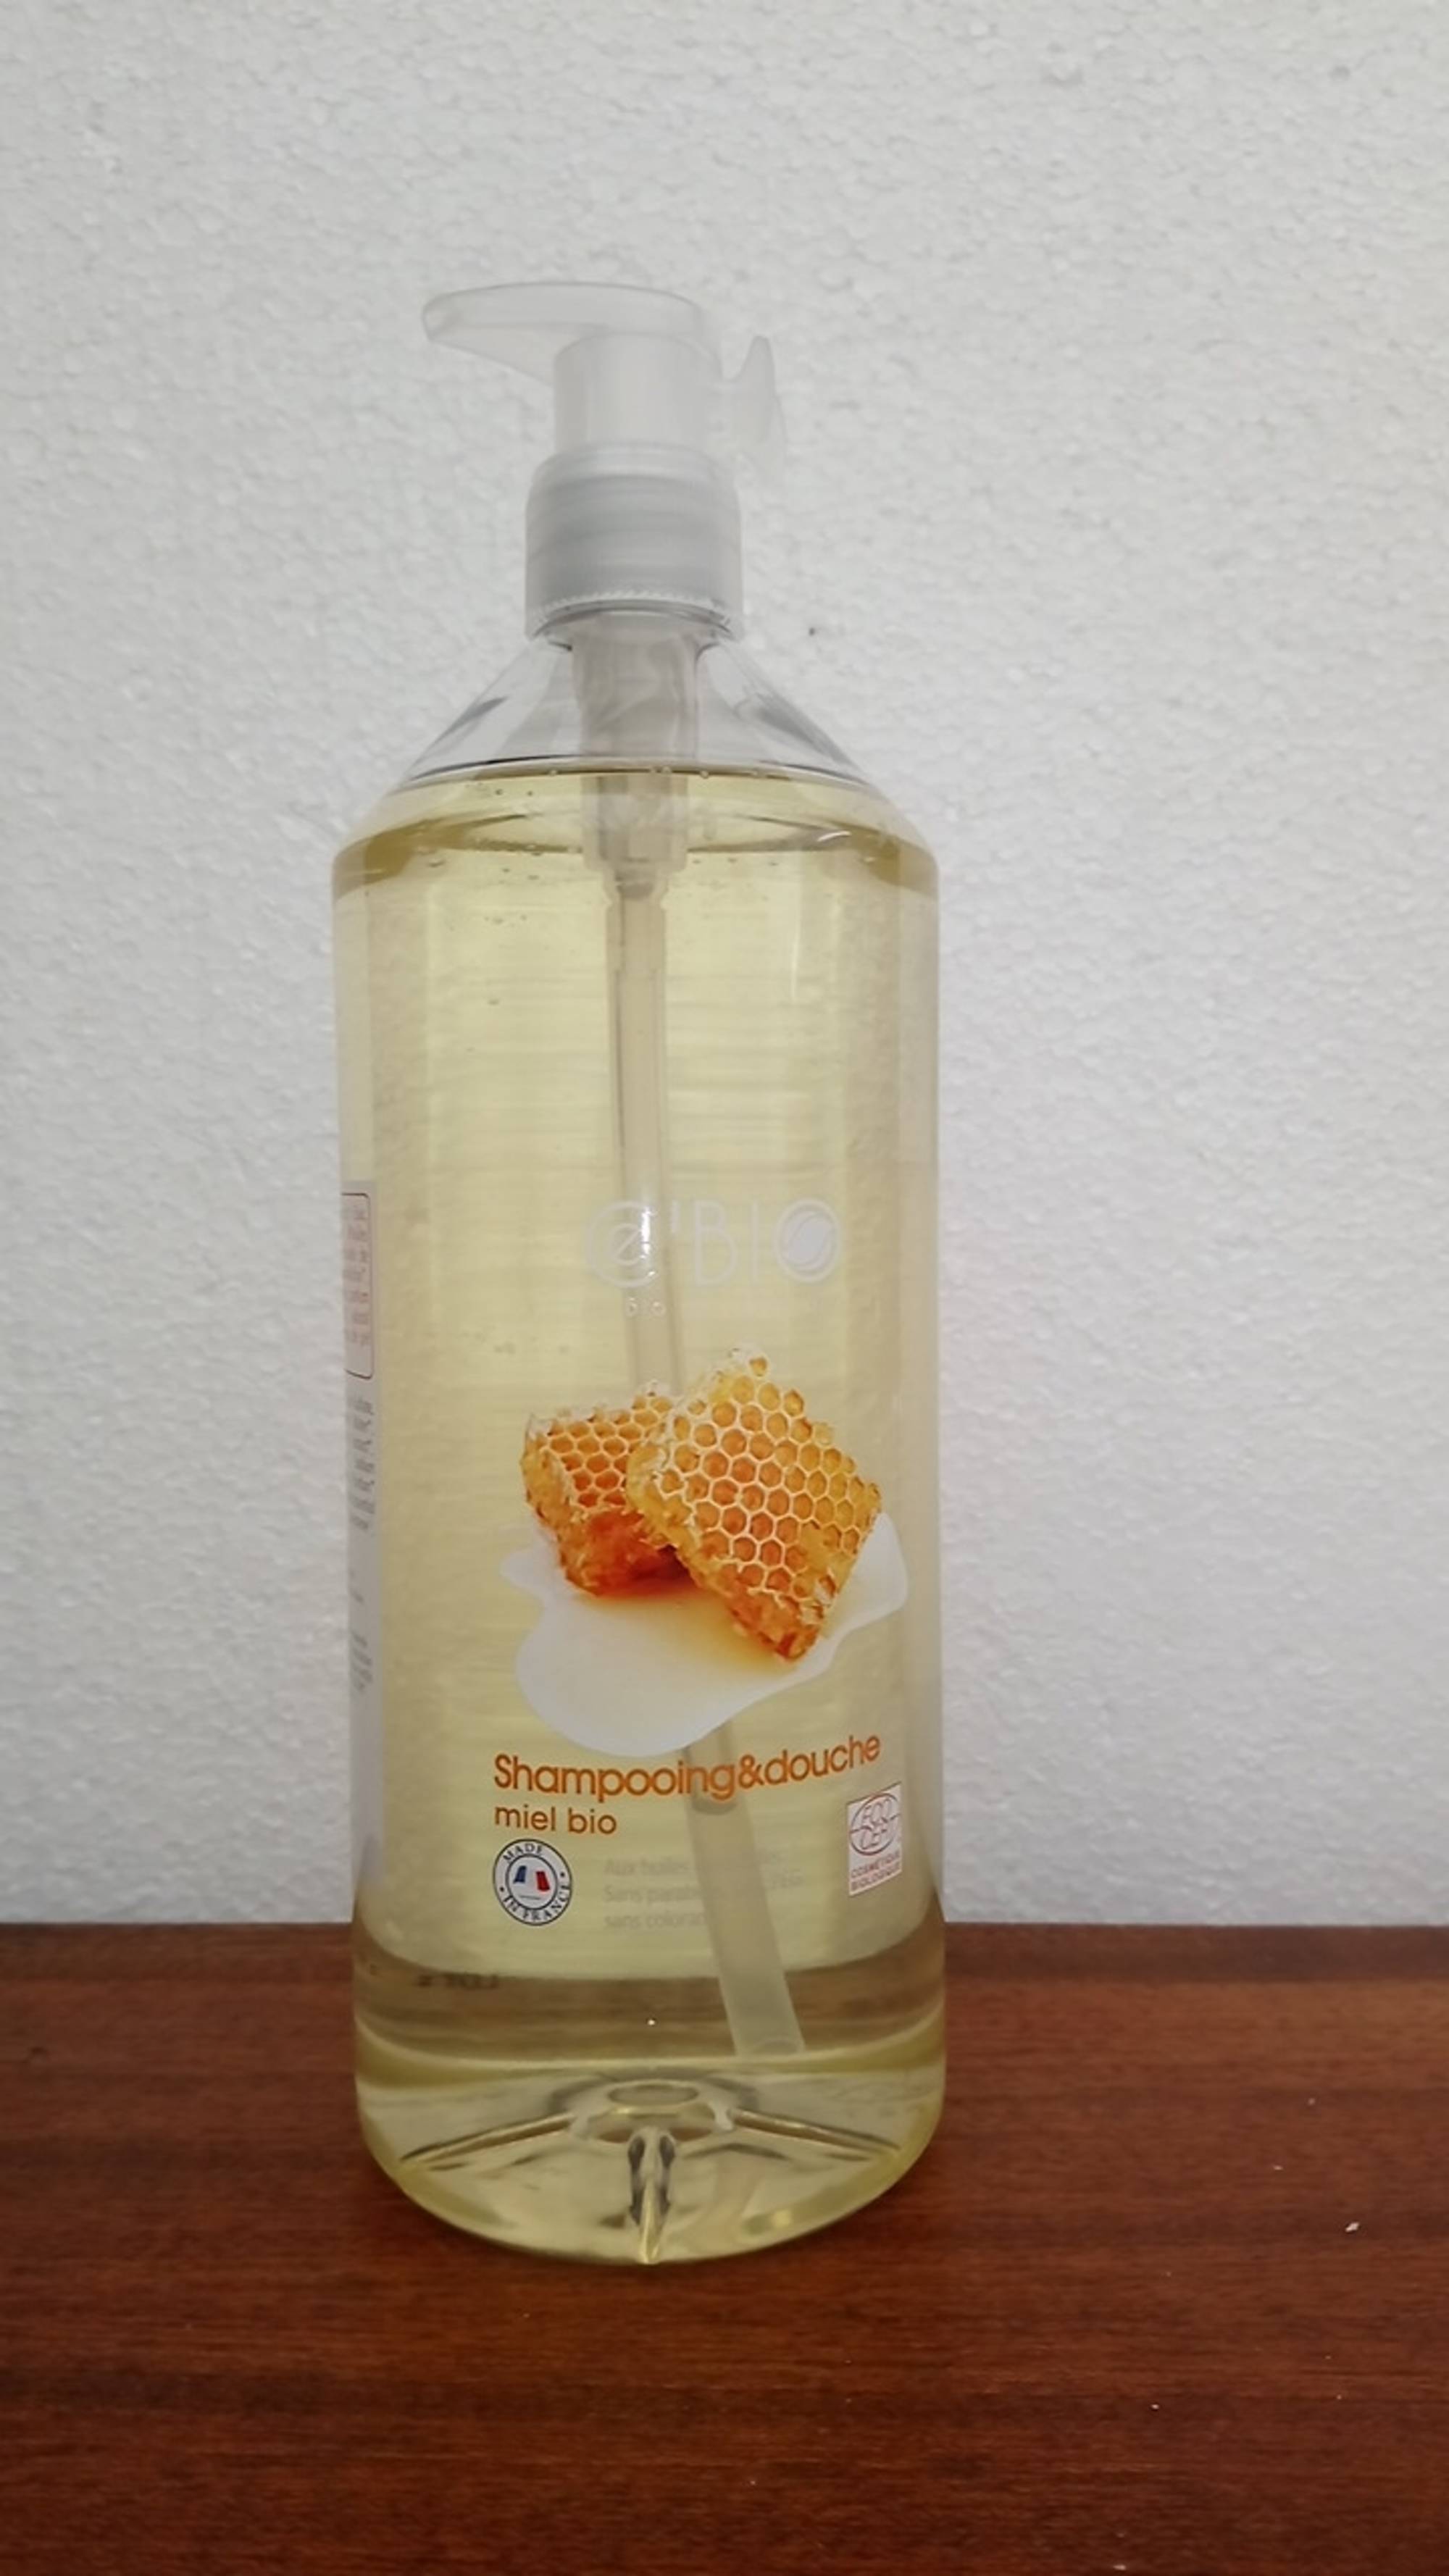 LABORATOIRE GRAVIER - Shampooing & douche miel bio